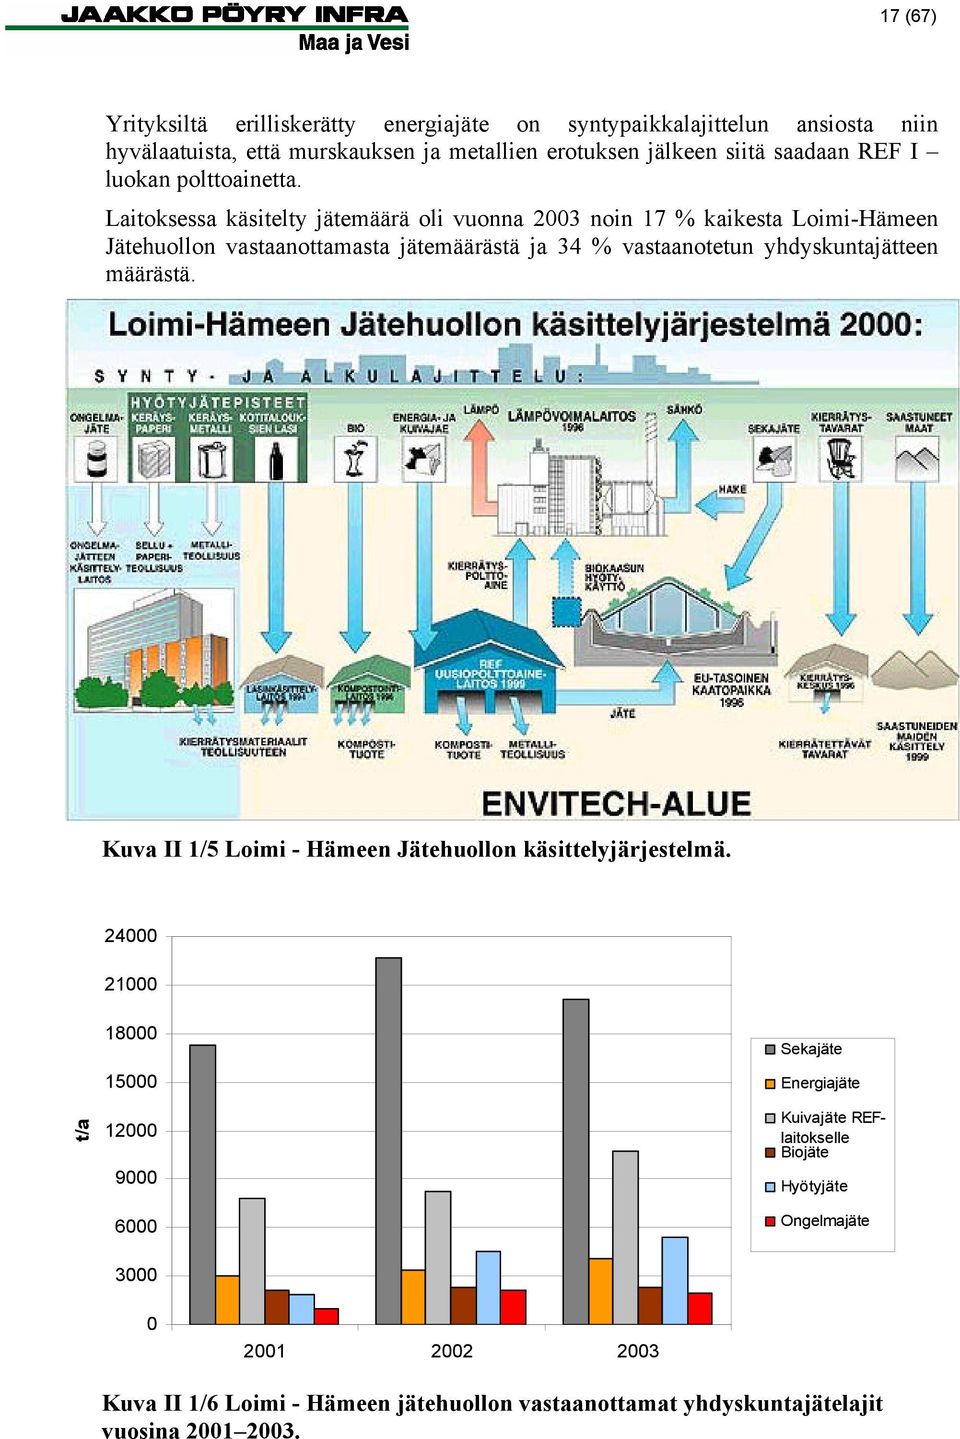 Laitoksessa käsitelty jätemäärä oli vuonna 2003 noin 17 % kaikesta Loimi-Hämeen Jätehuollon vastaanottamasta jätemäärästä ja 34 % vastaanotetun yhdyskuntajätteen